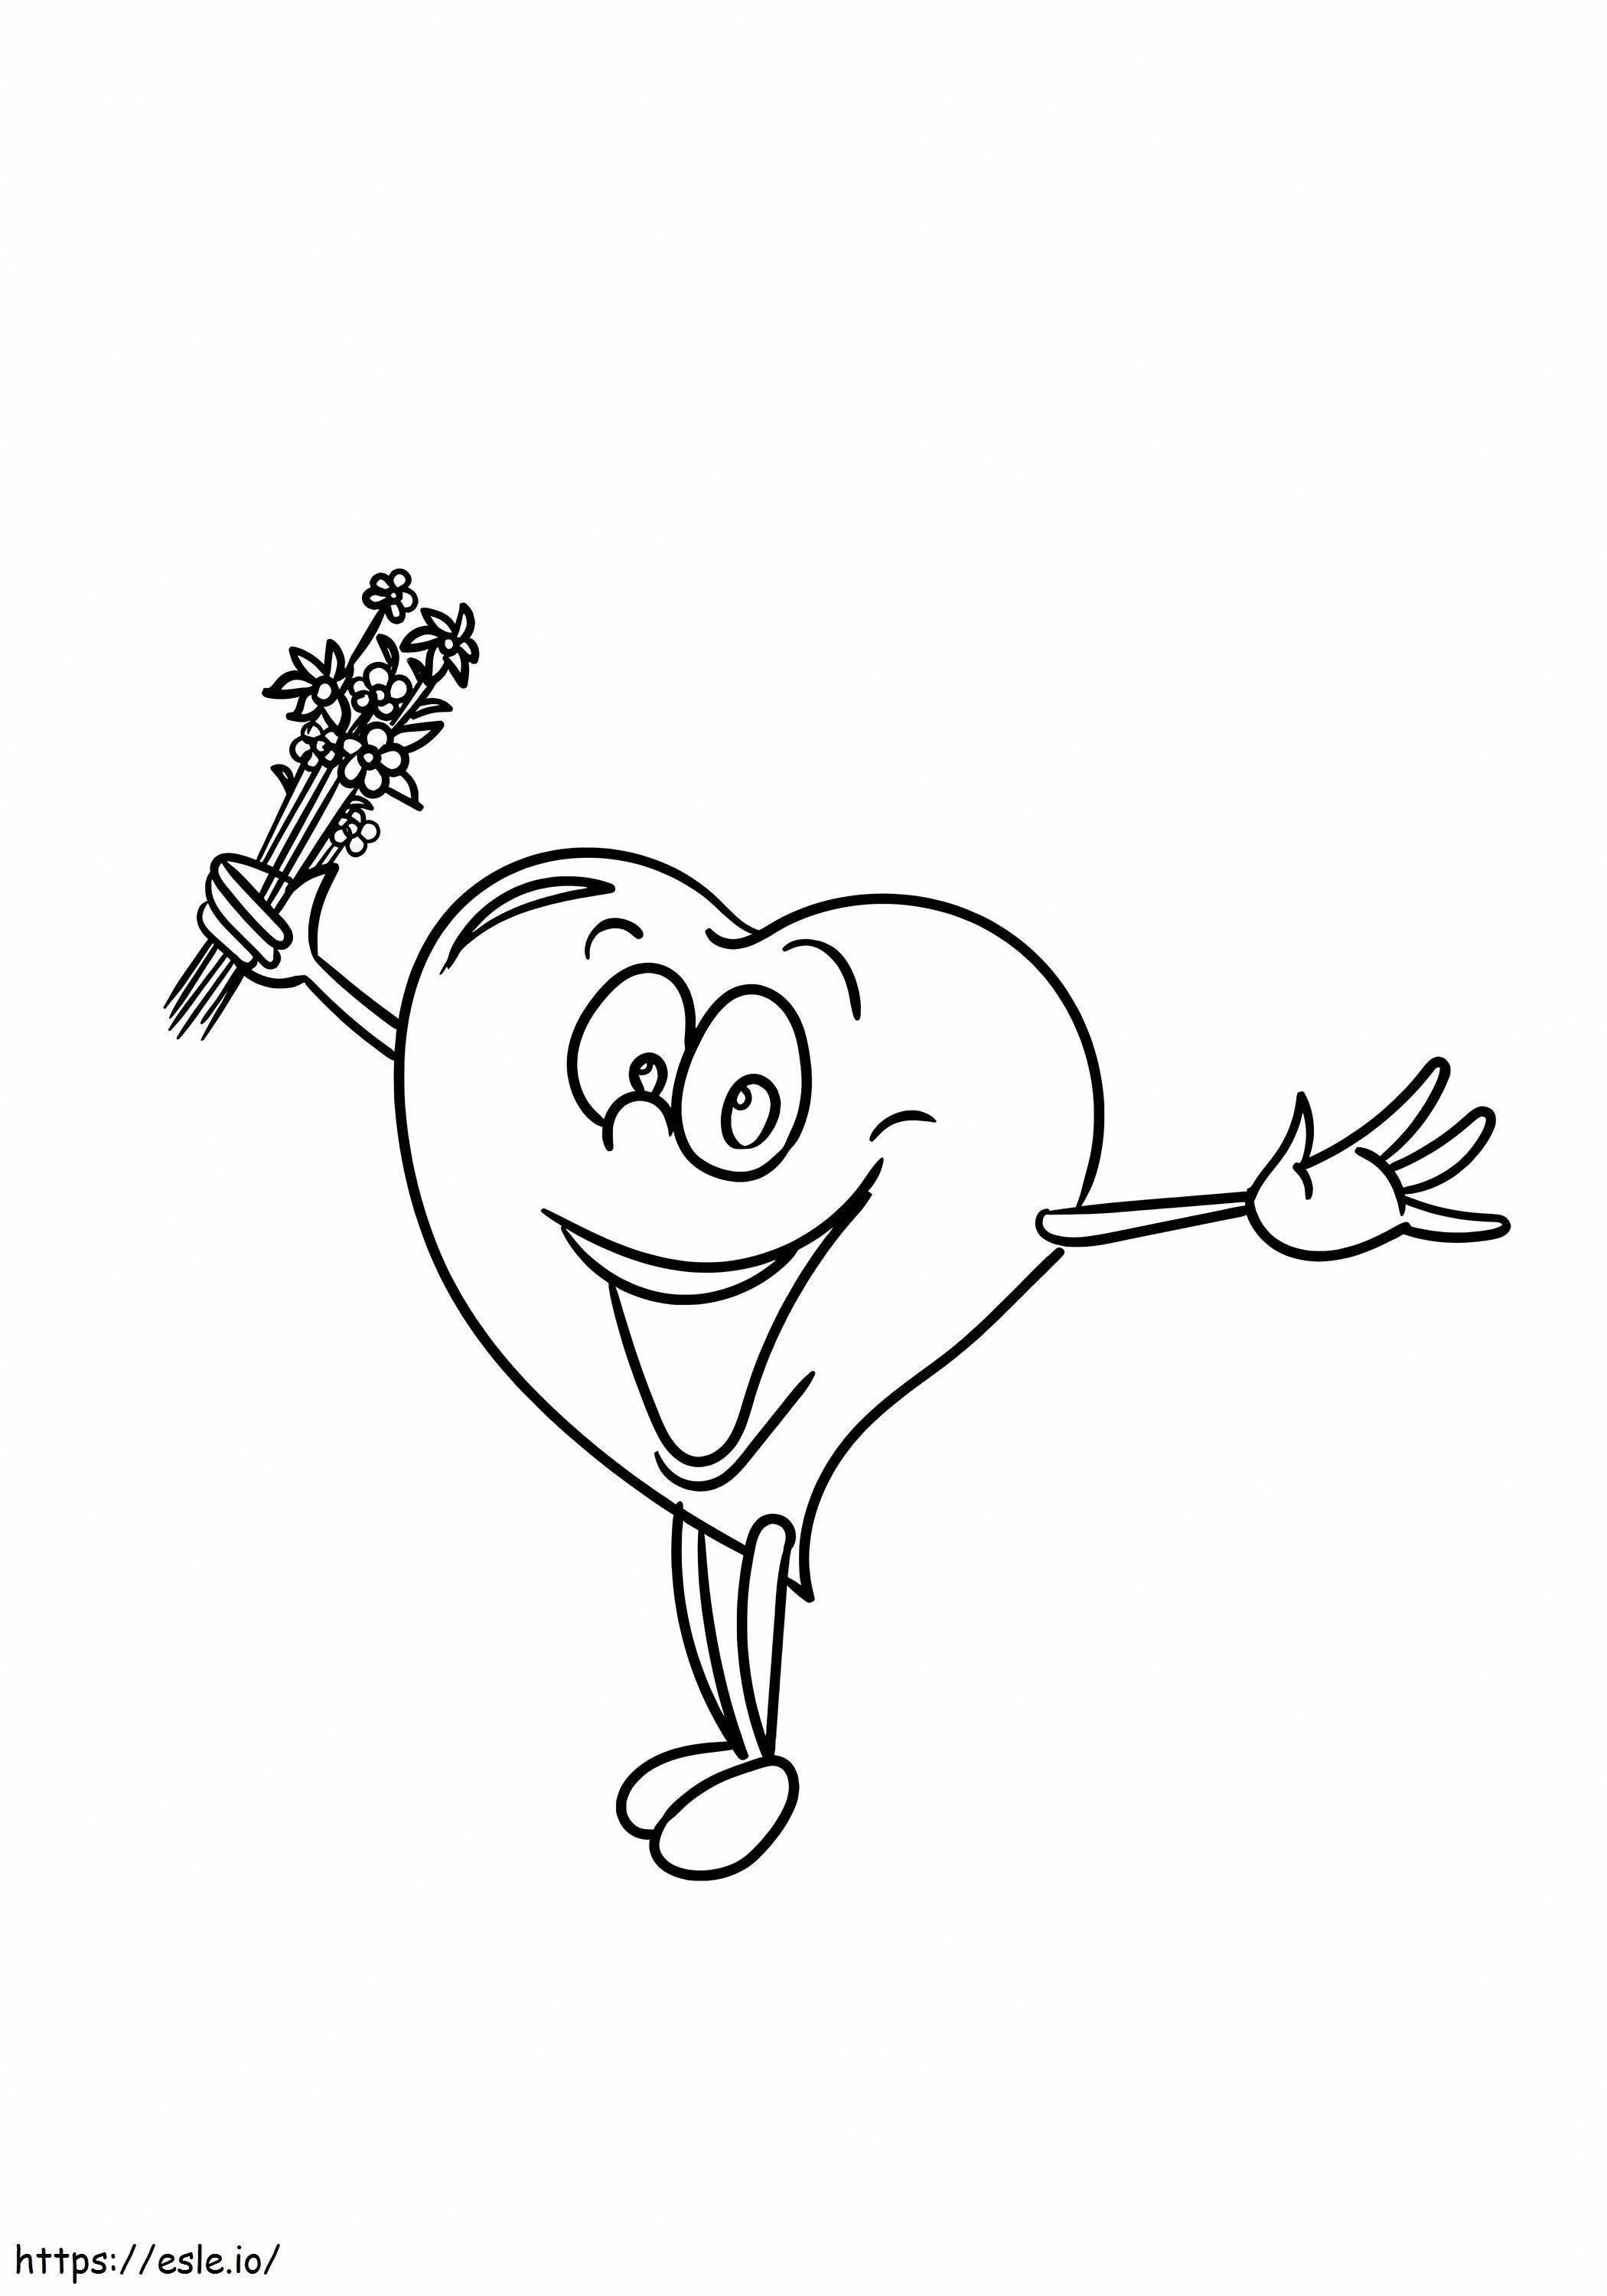 Happy Cartoon Heart coloring page